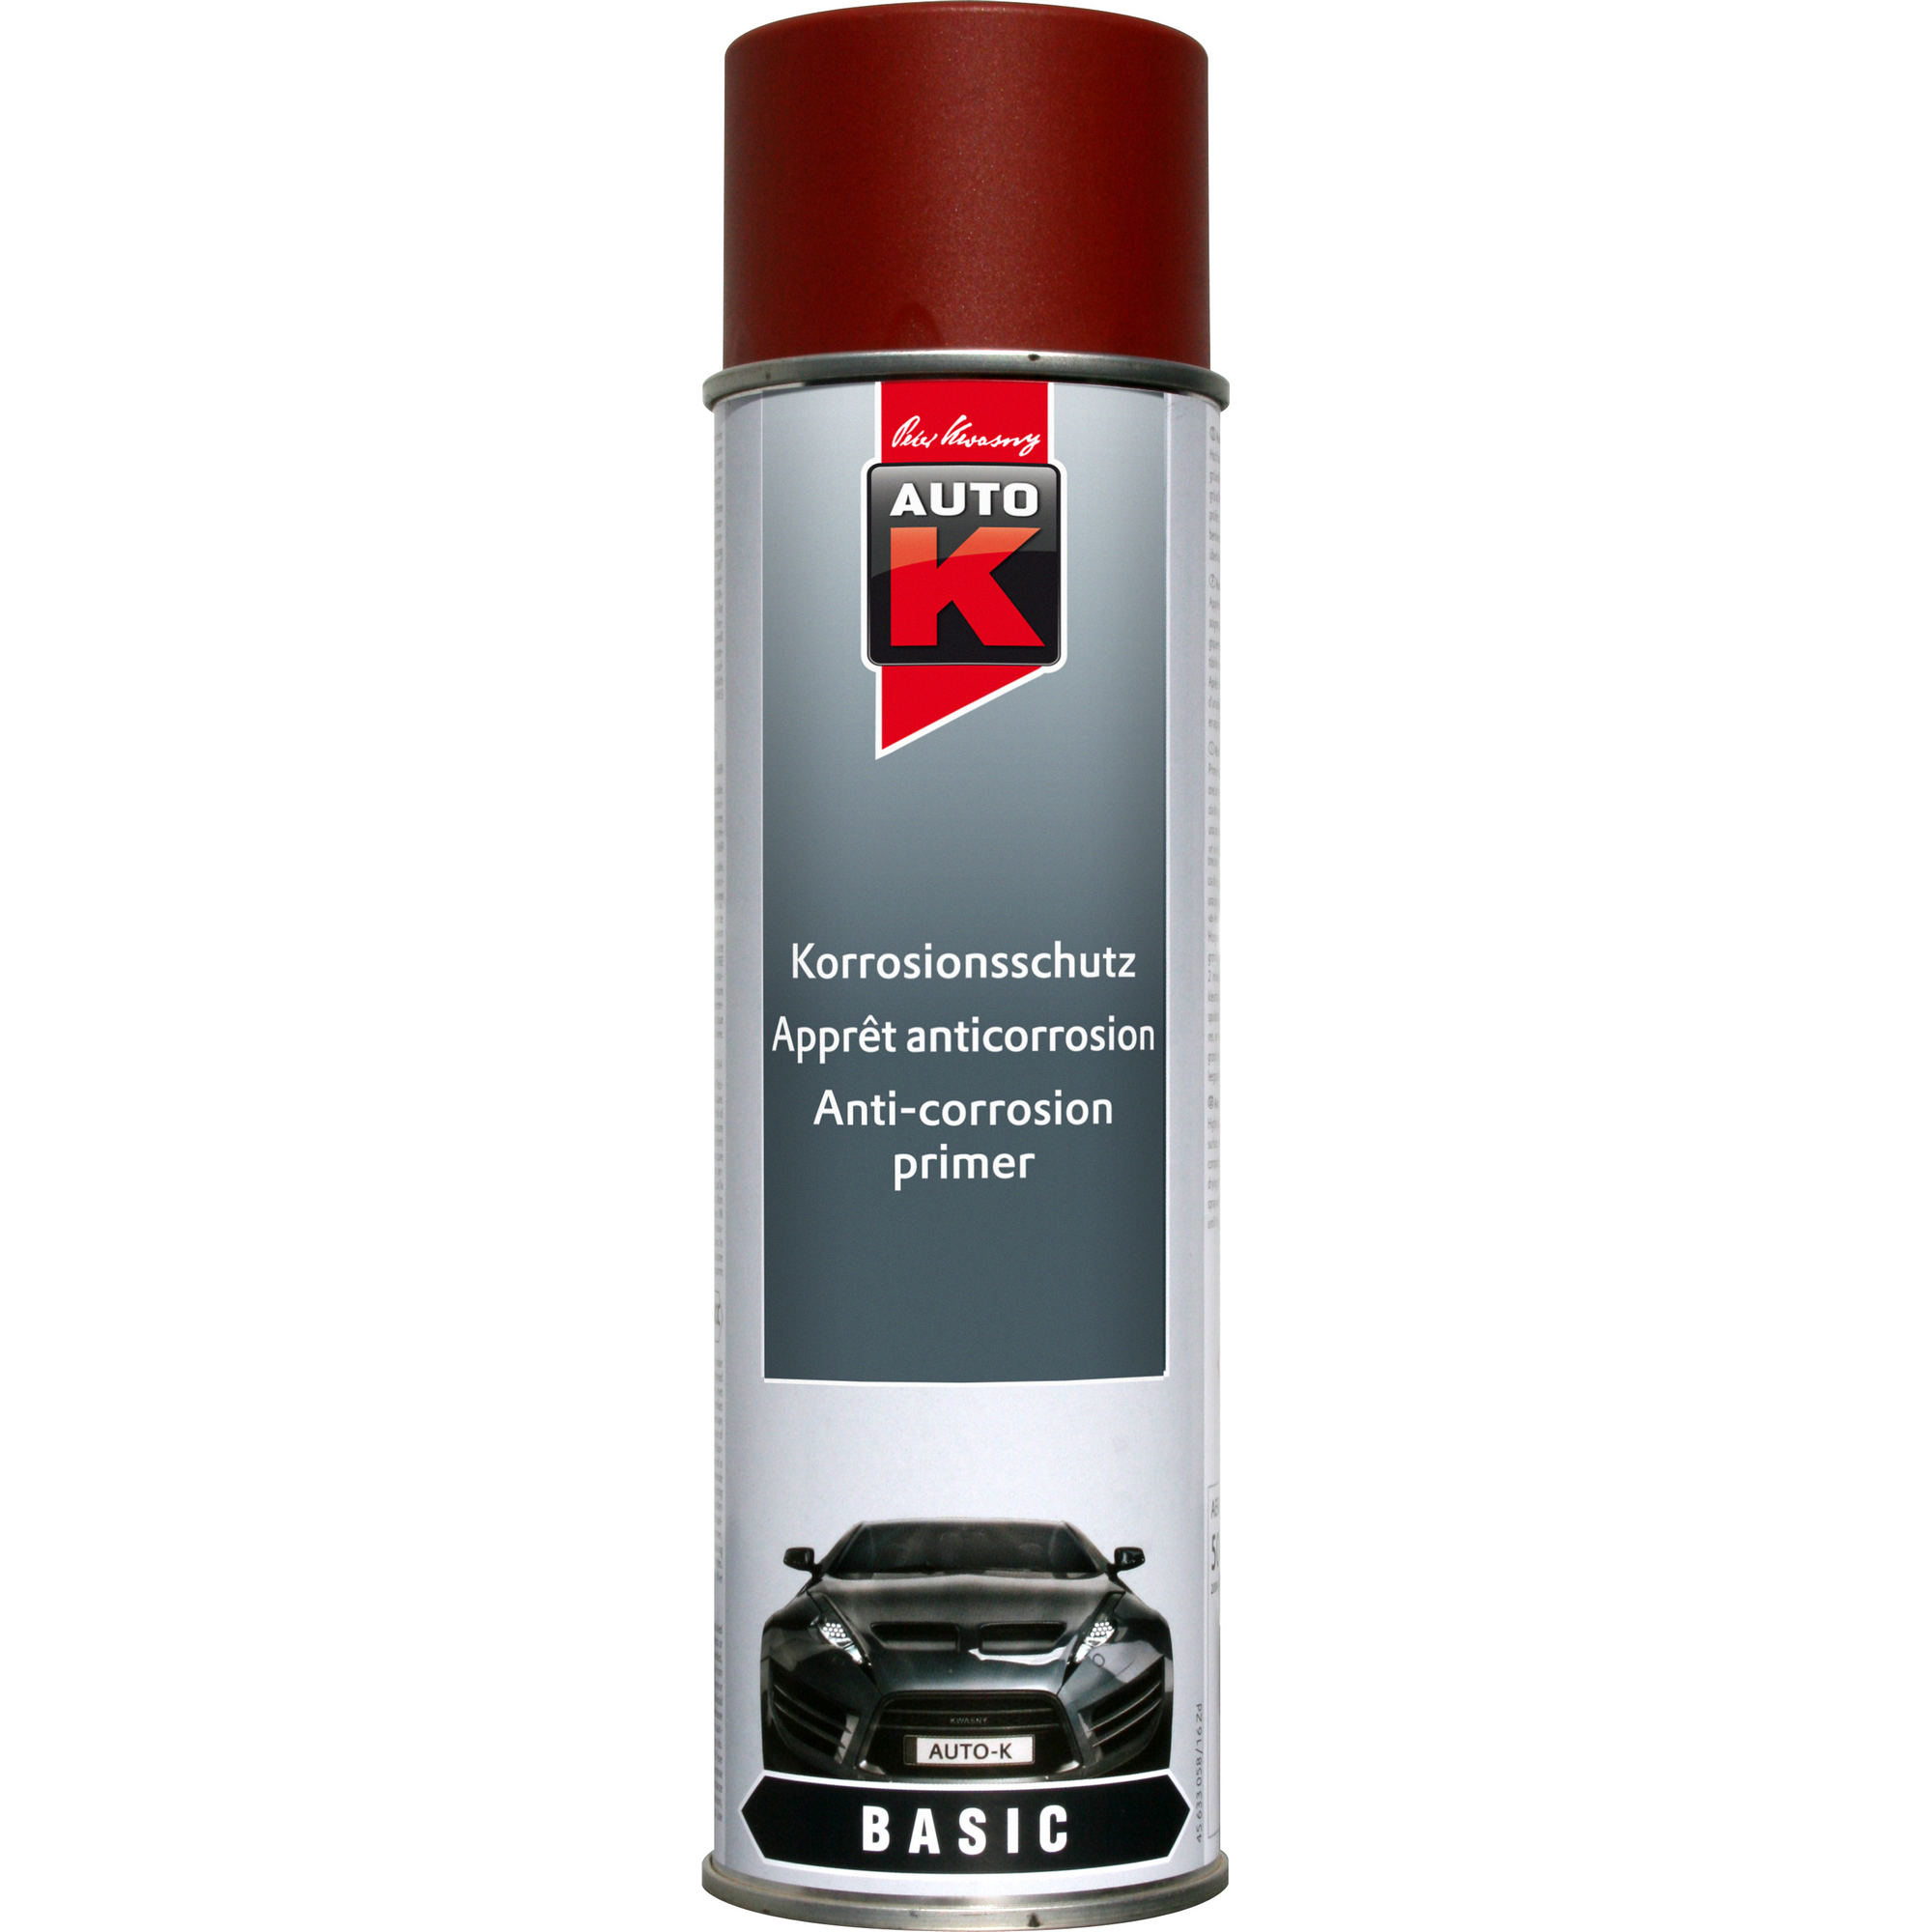 Auto-K Korrosionsschutz-Grundierung 500 ml + product picture